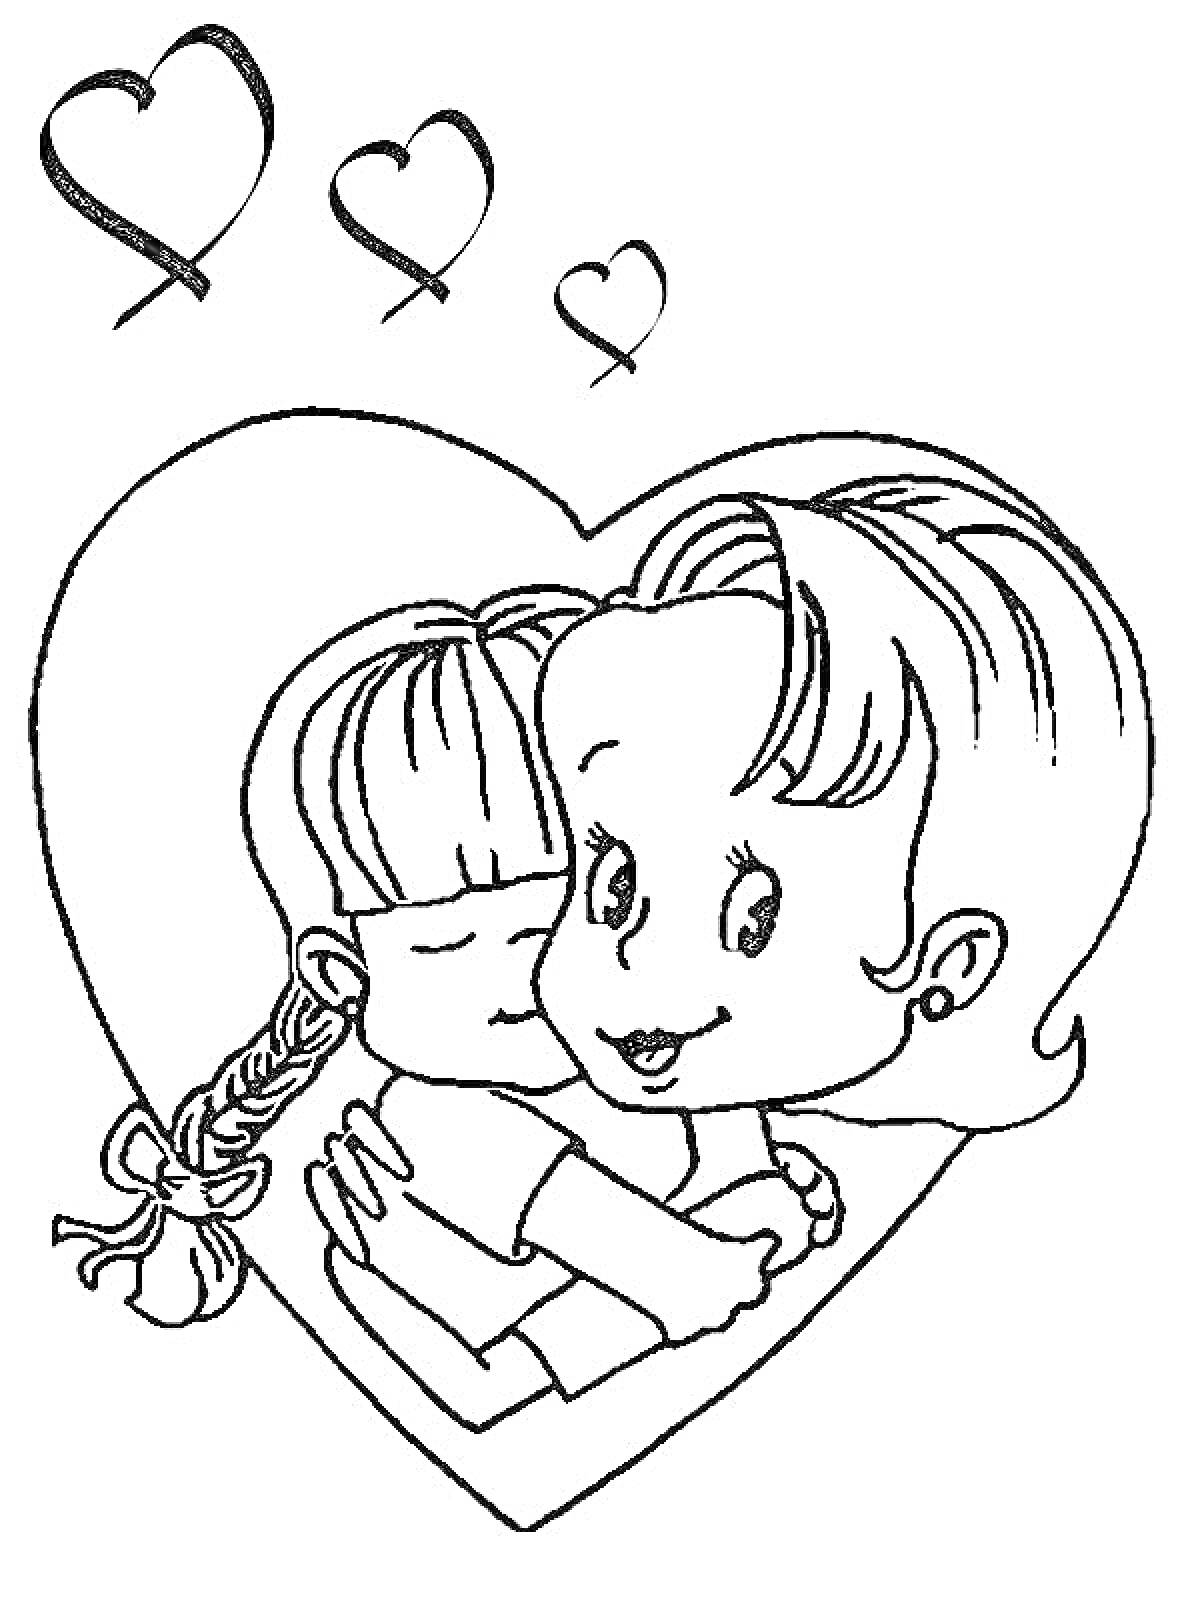 Раскраска Мама и дочка, обнимающиеся в сердце, три маленьких сердечка сверху